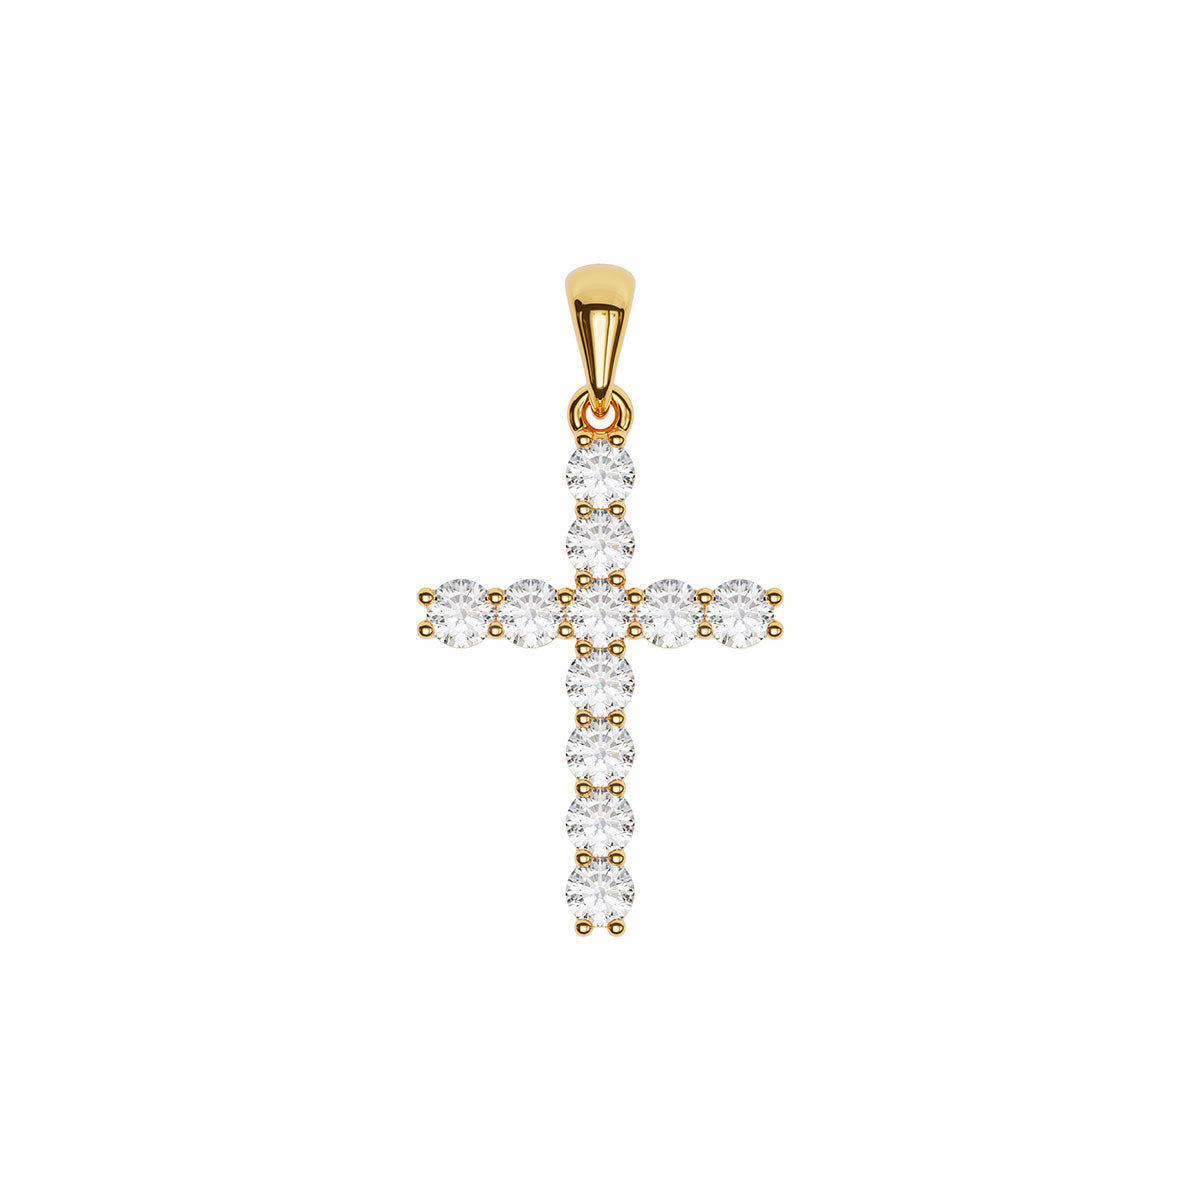 Standard Size Pavé Cross With 2.5mm Diamonds